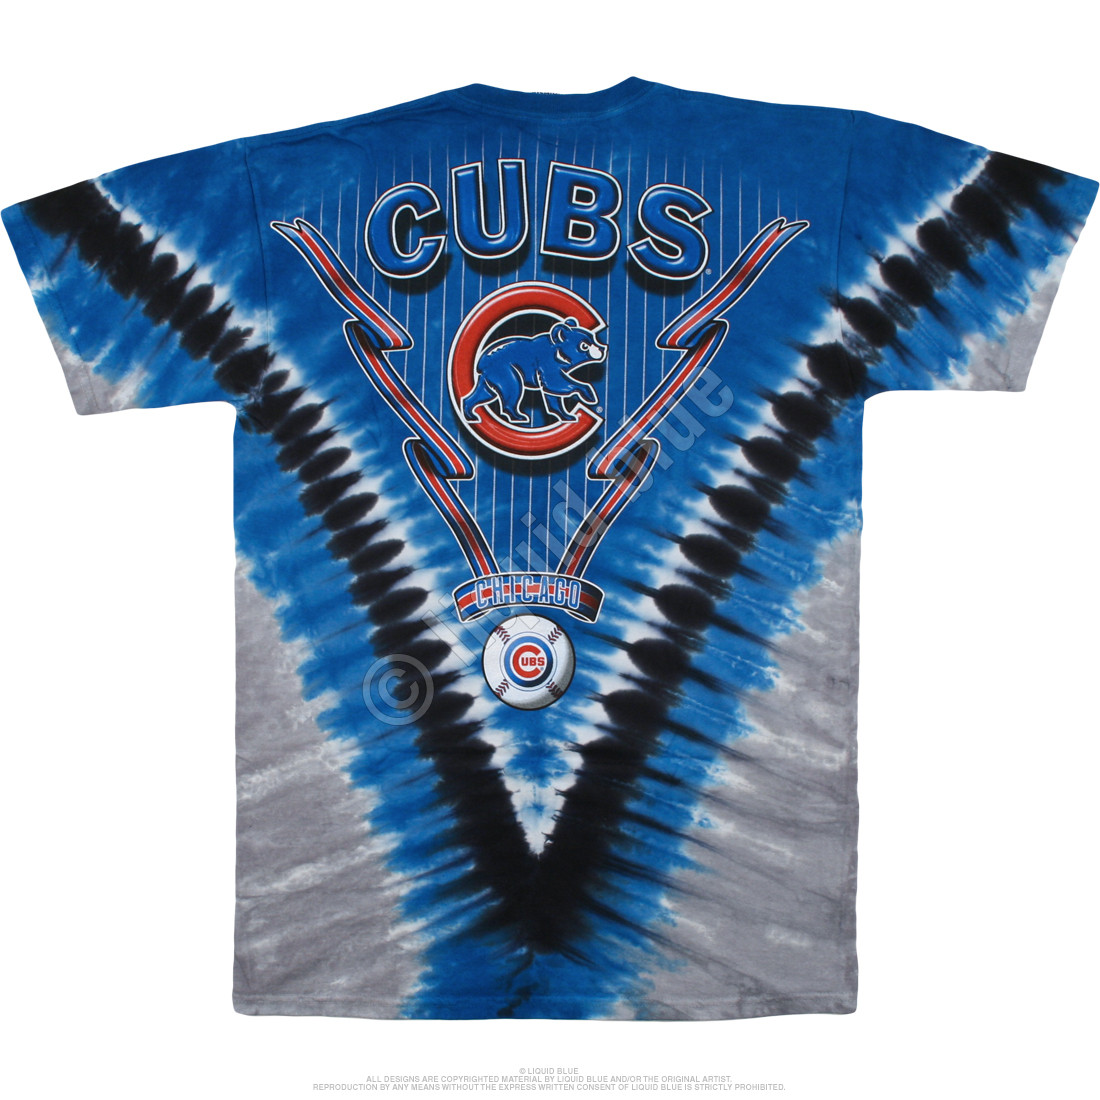 cubs button up jersey